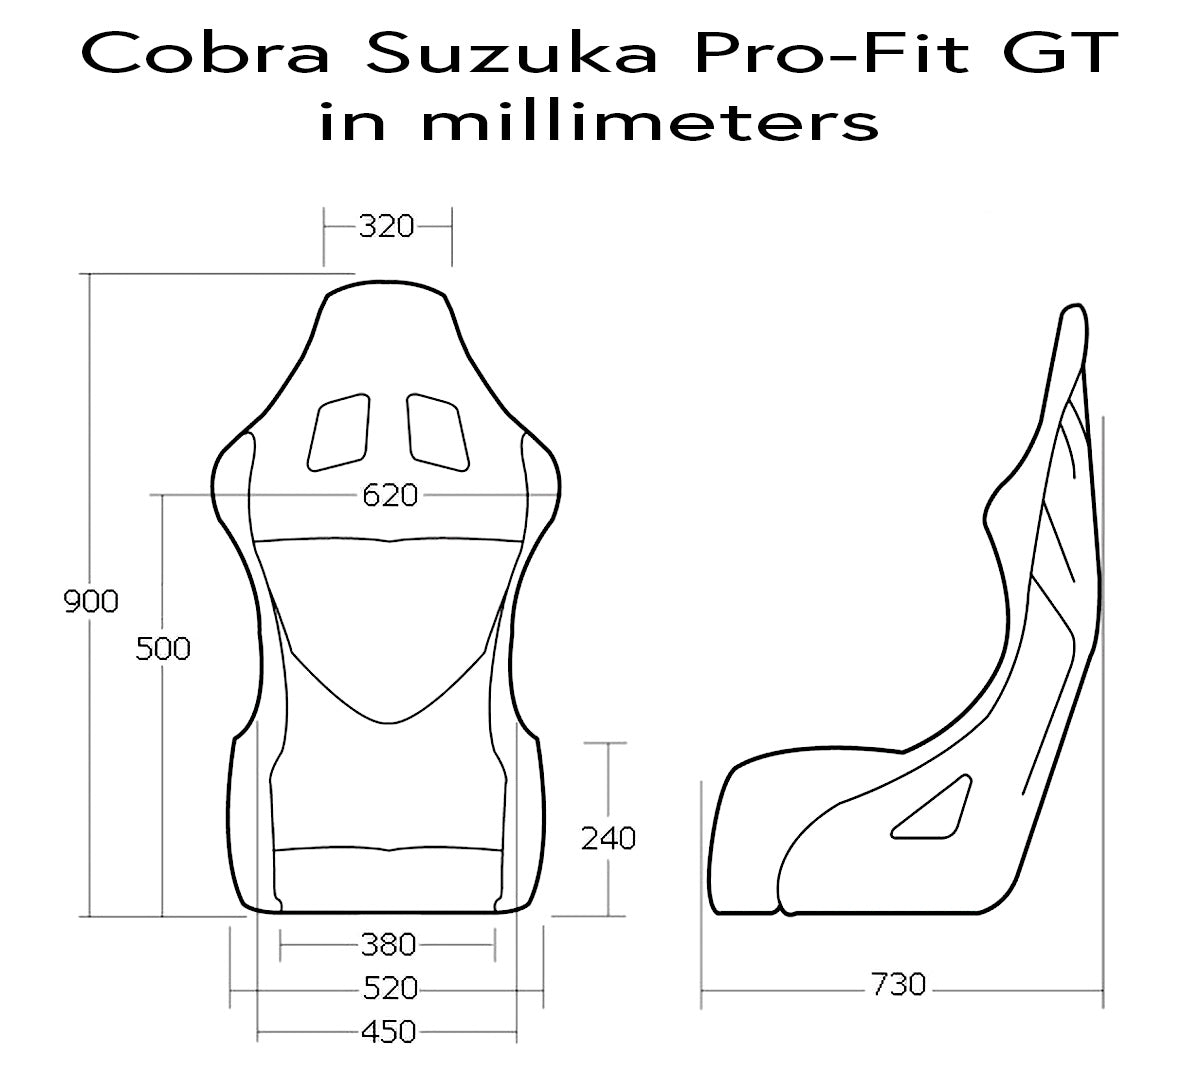 Cobra Suzuka Pro-Fit Racing Seat Dimensions GT